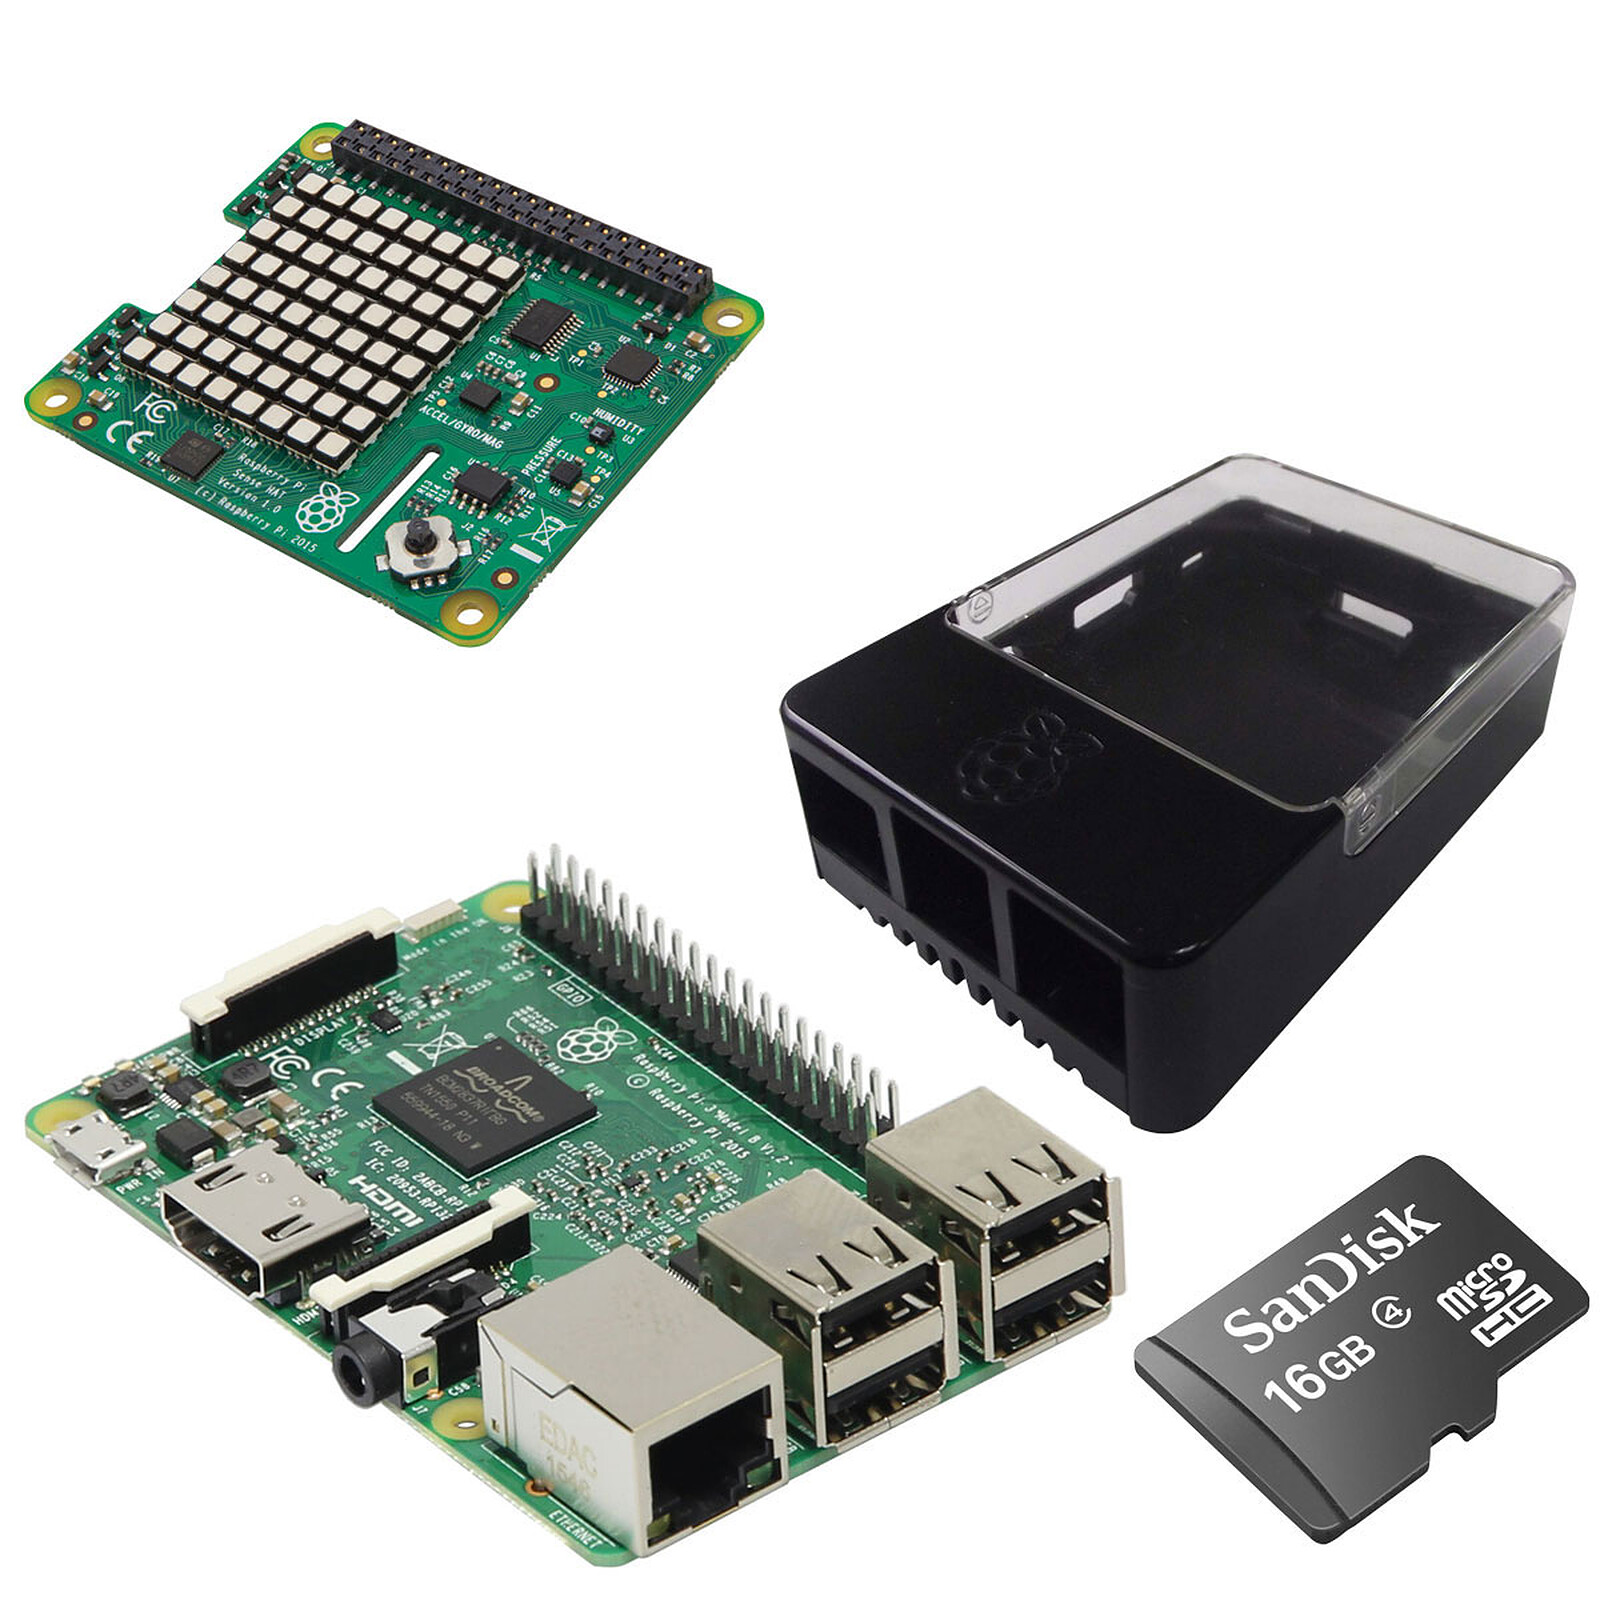 Kit Starter Raspberry Pi 3 A+ avec alimentation, boitier et micro-sd